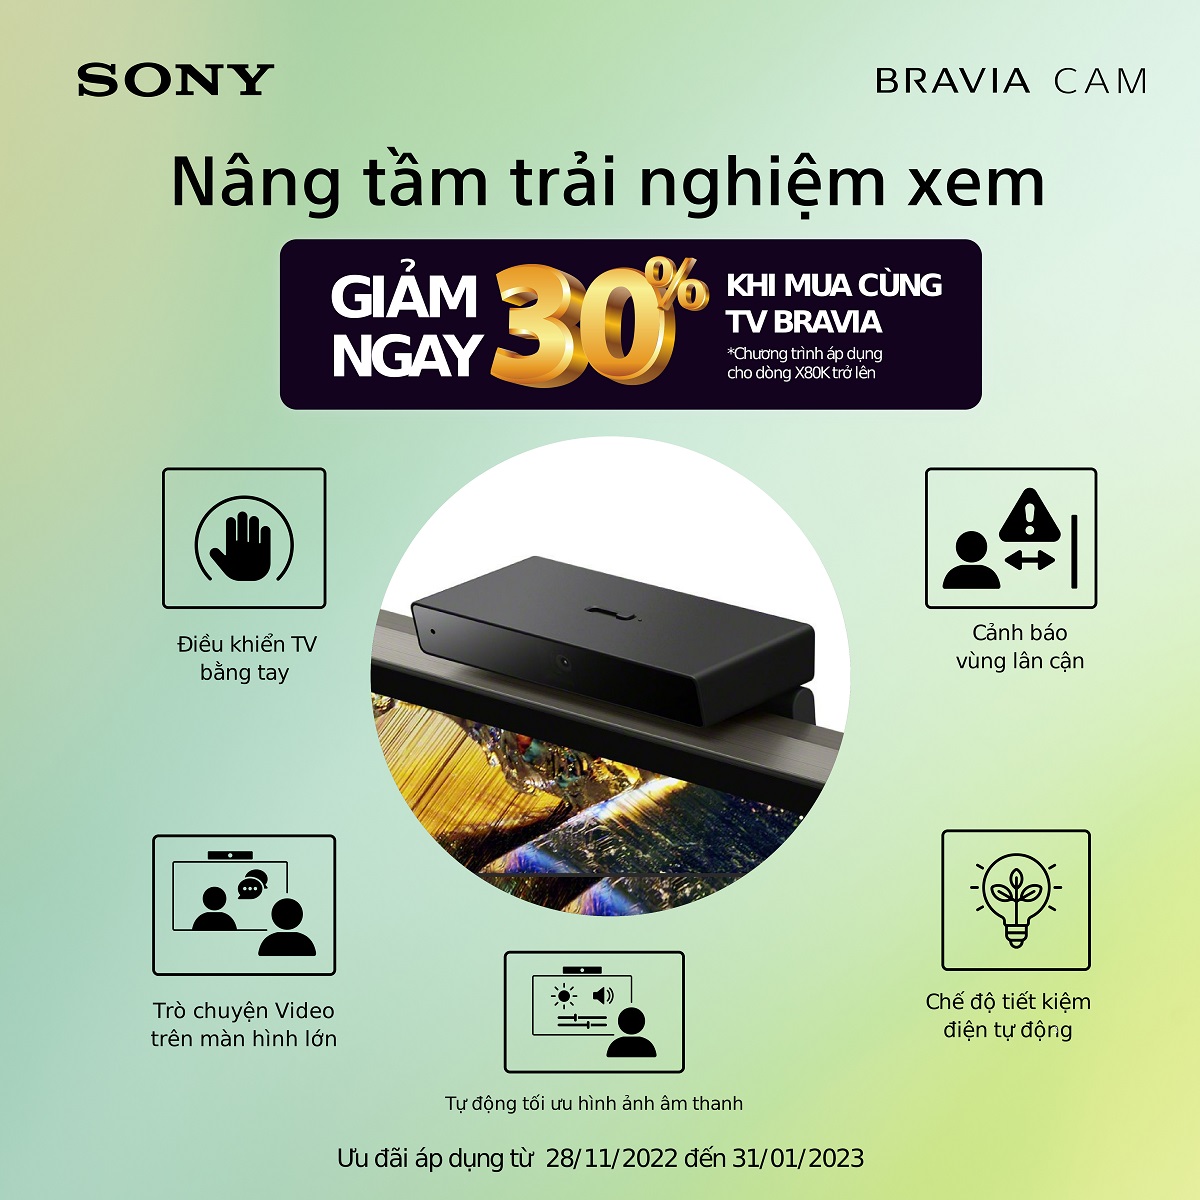 Trò chuyện video và điều khiển TV bằng tay với BRAVIA CAM thông minh trên TV Sony